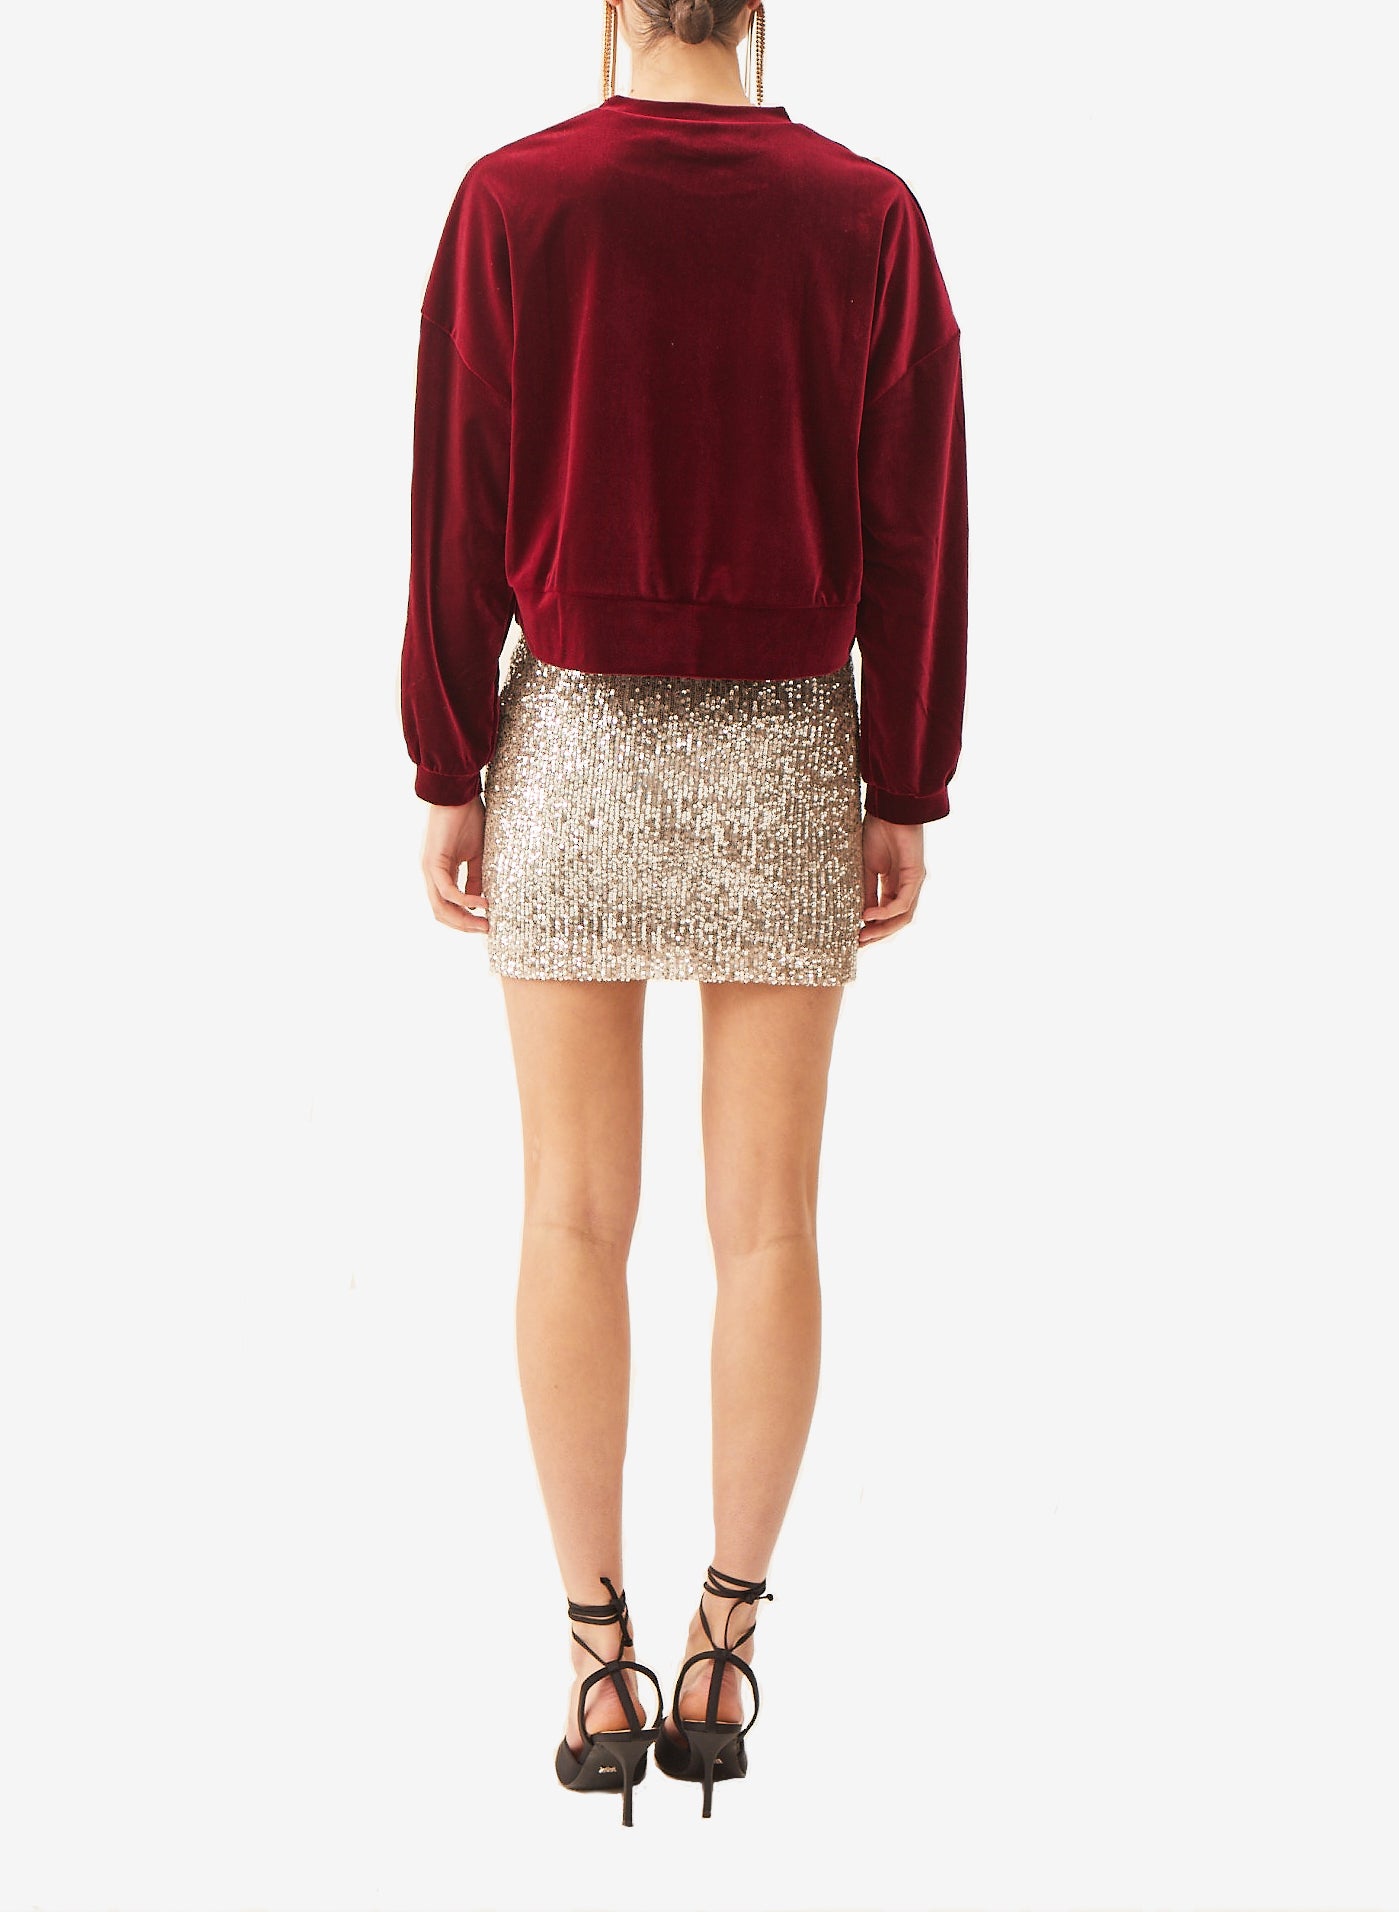 LINDA - short burgundy sequin skirt